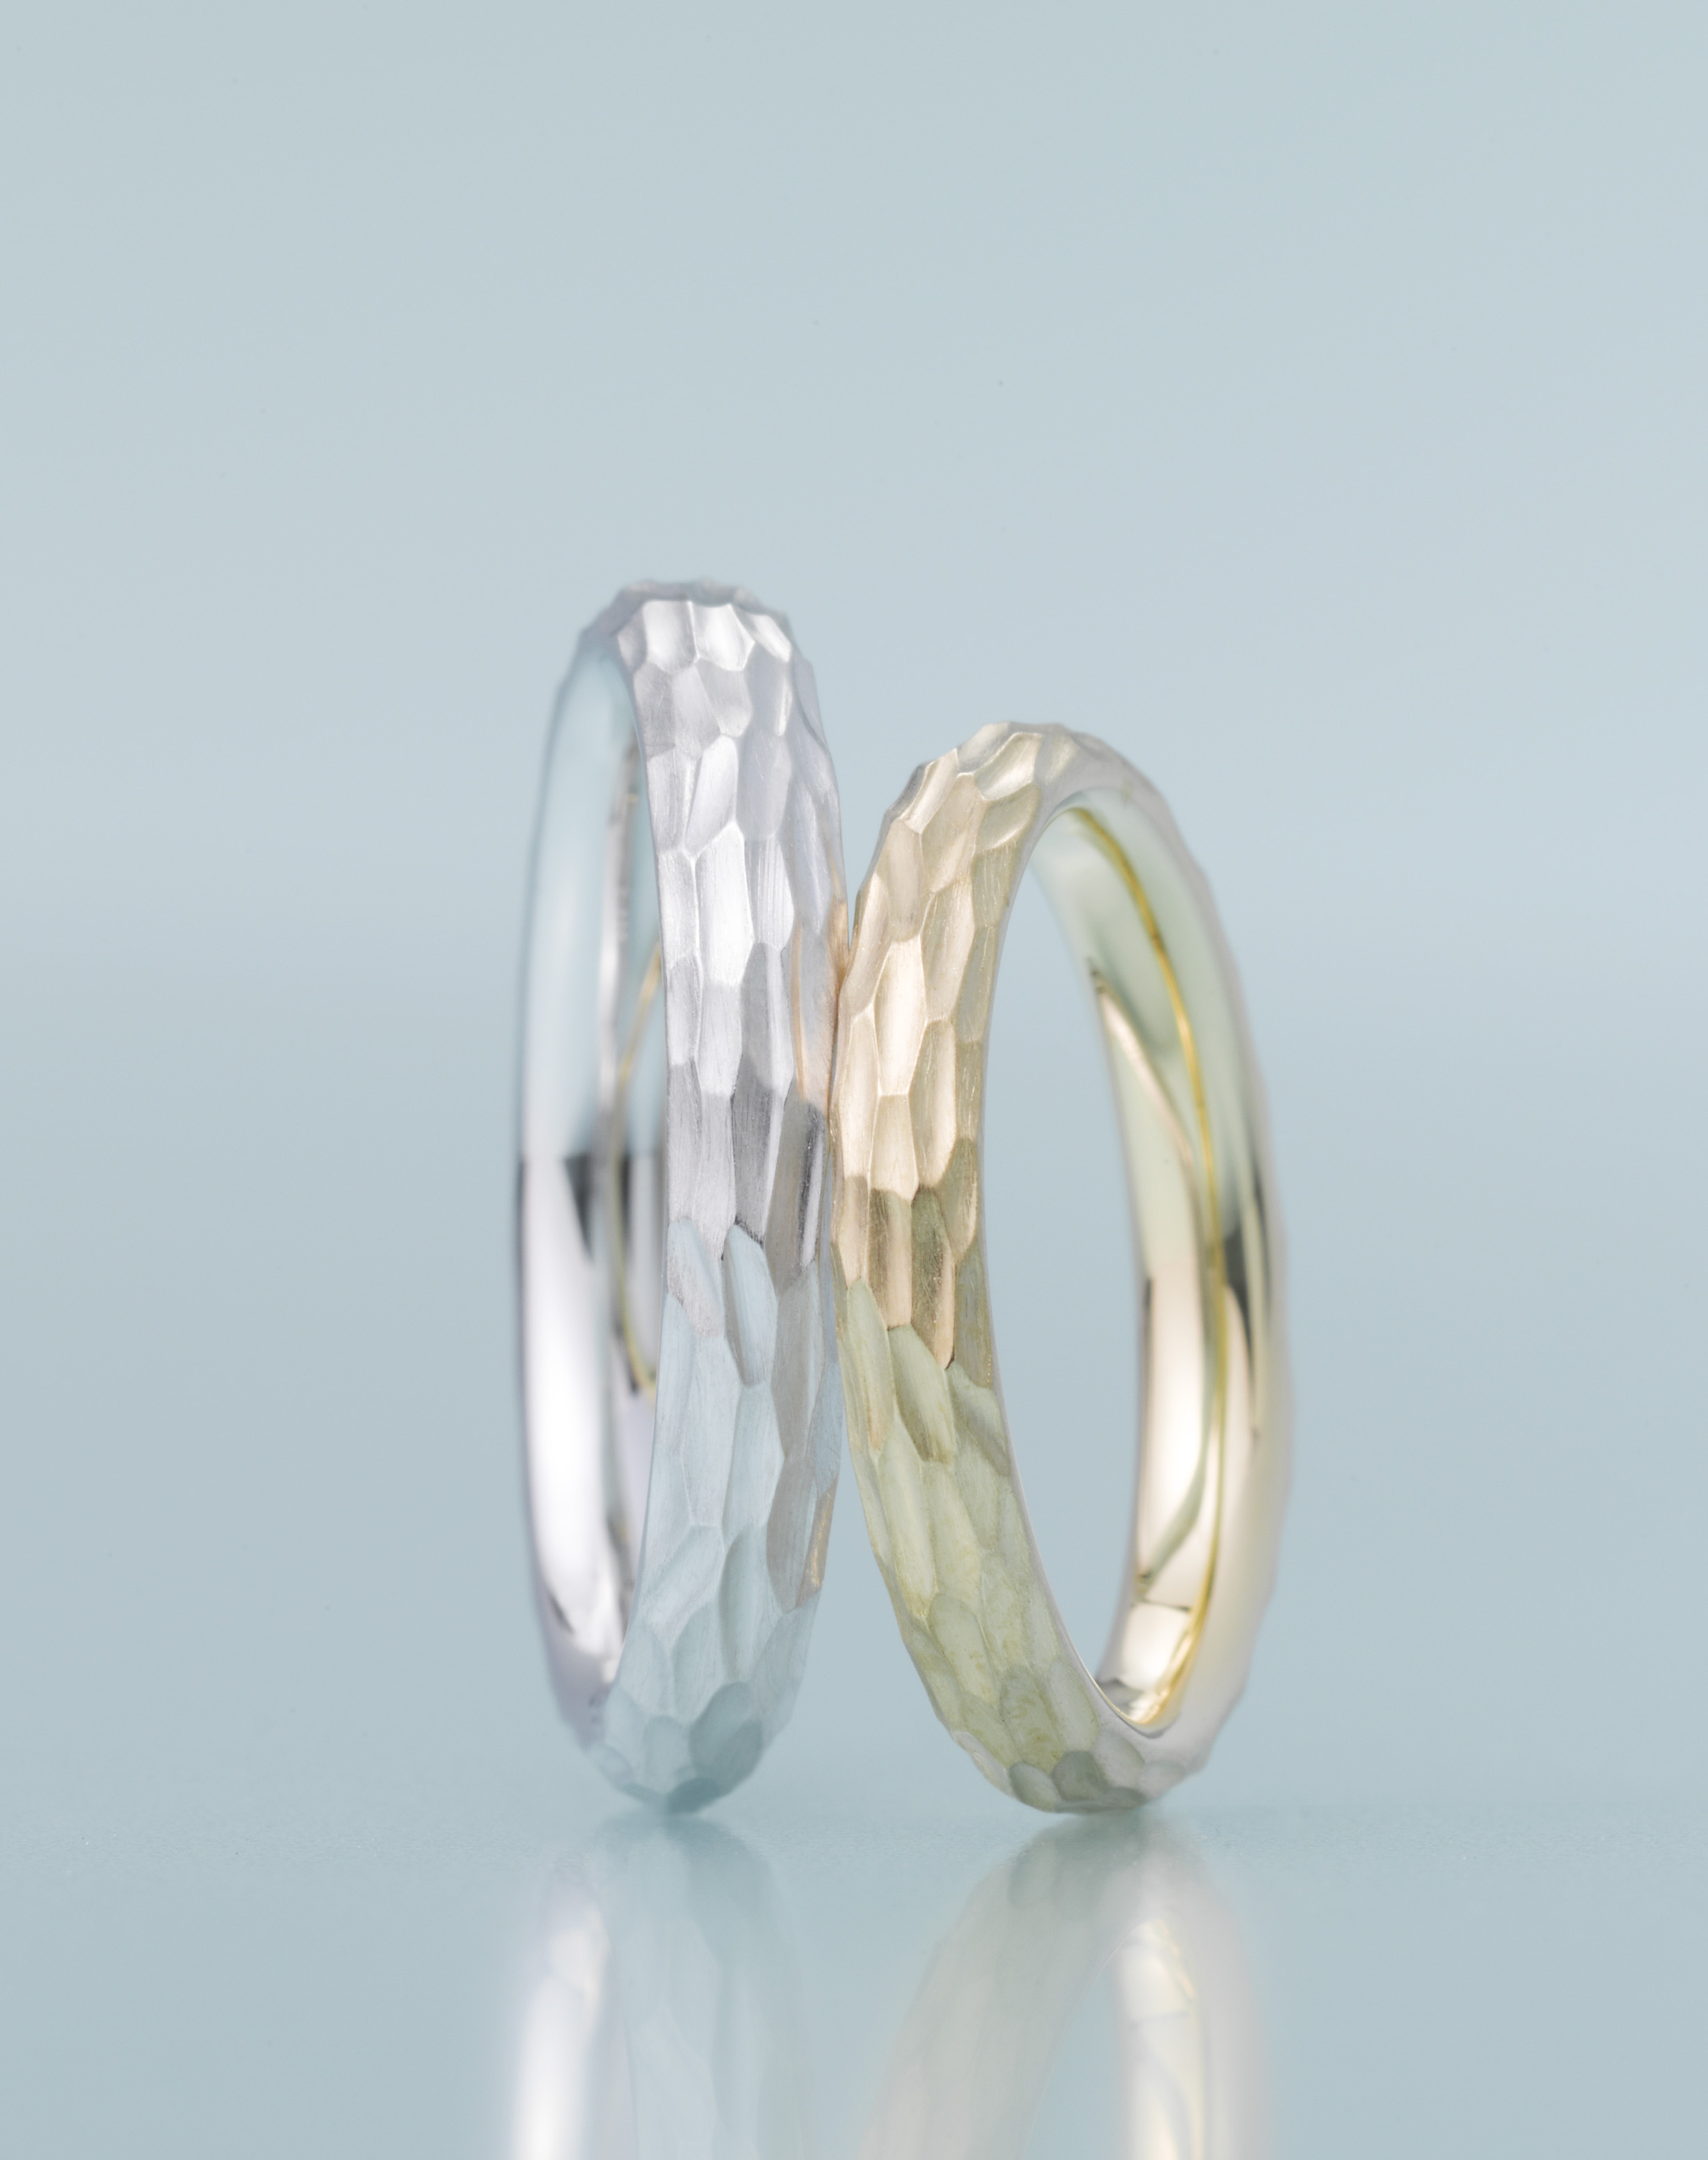 日本初、40歳以上しか買えない結婚指輪ブランド『Hygge ヒュッゲ』旗揚げ GNH、すすむ晩婚化に新たなビジネスを開始 - 記事詳細